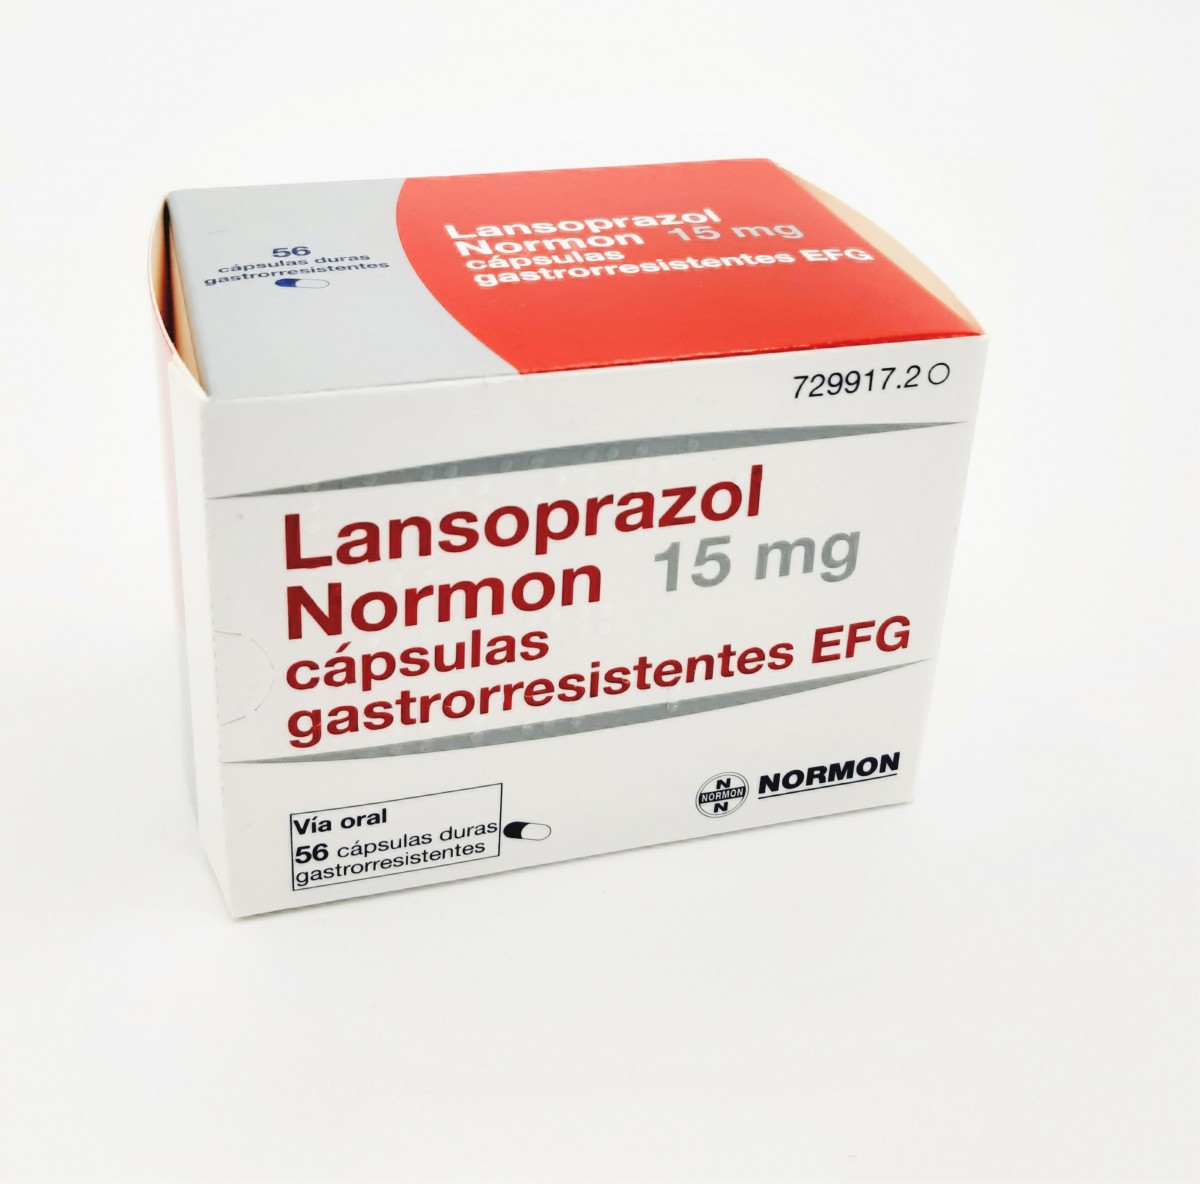 LANSOPRAZOL NORMON 15 mg CAPSULAS GASTRORRESISTENTES EFG,56 capsulas fotografía del envase.